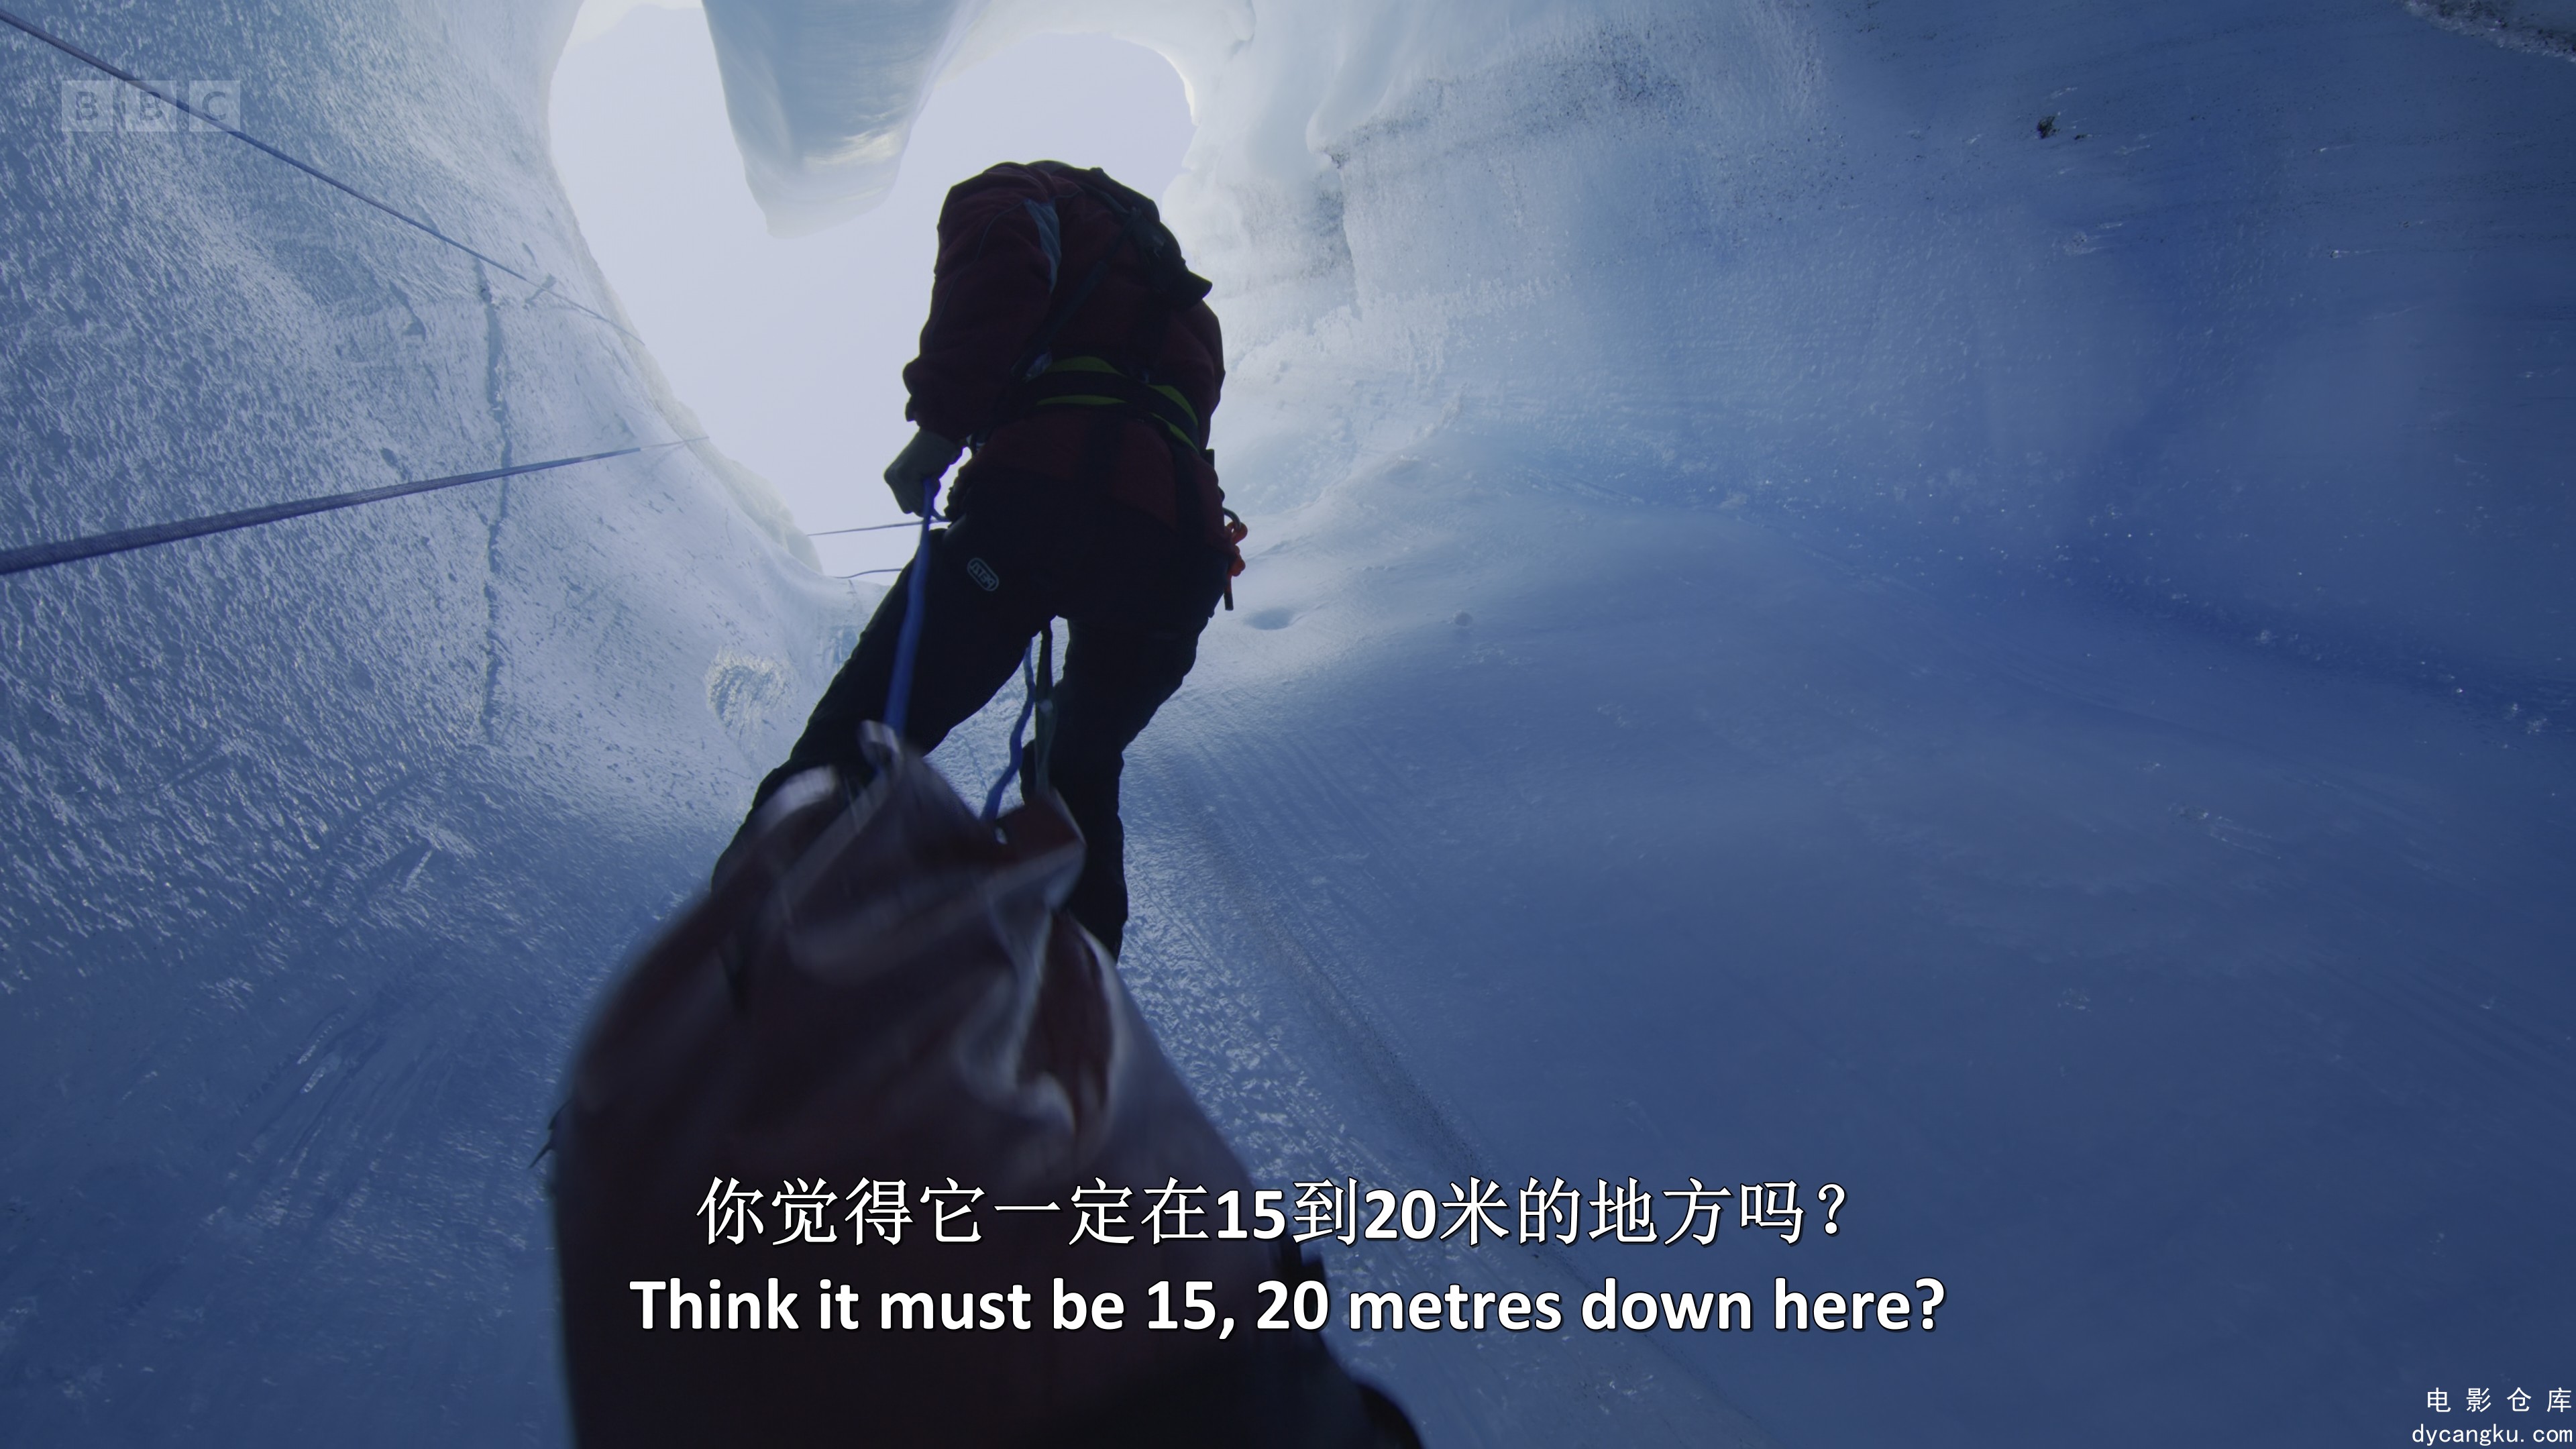 [电影仓库dycangku.com]Frozen.Planet.II.S01E06.Our.Frozen.Planet.2160p.iP.WEB-DL2.jpg